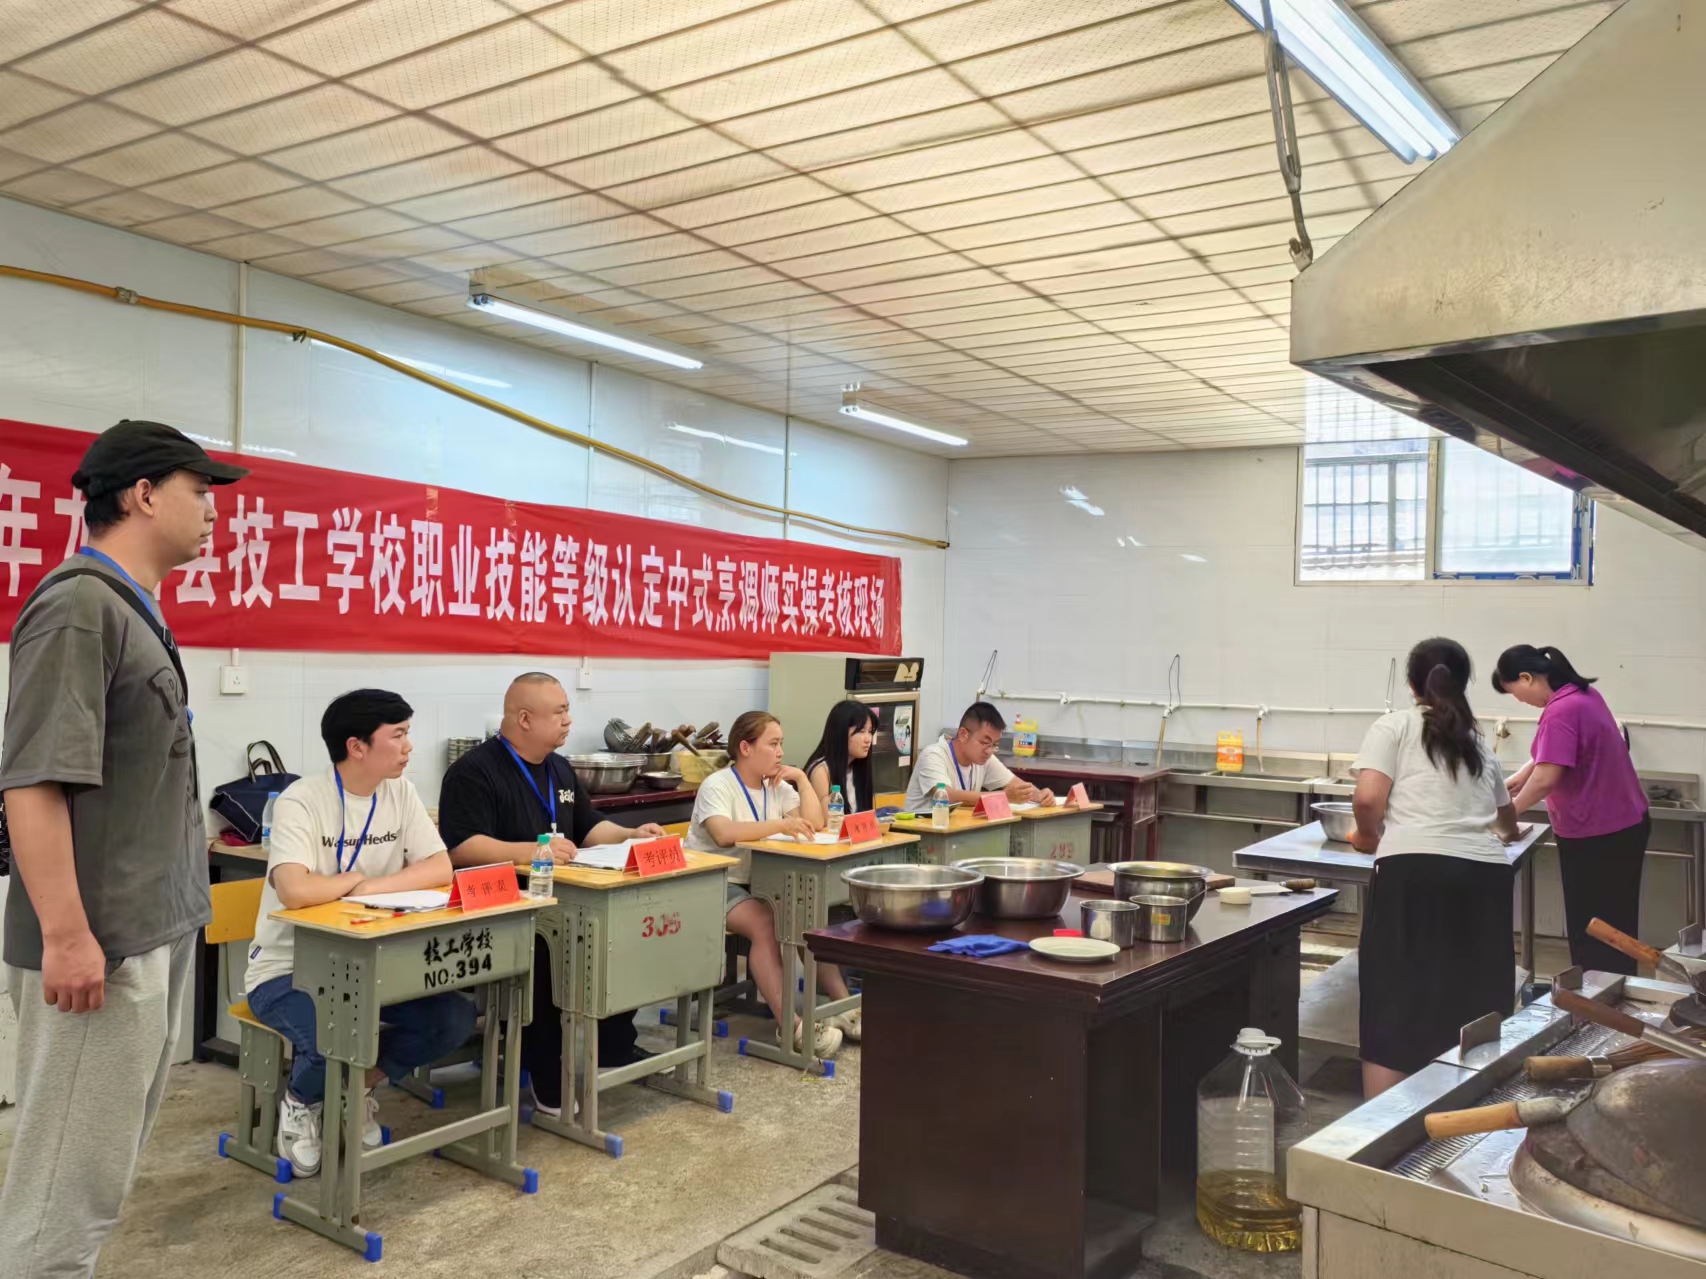 龙山县技工学校举办技能等级认定及专项考核 促进更高质量就业